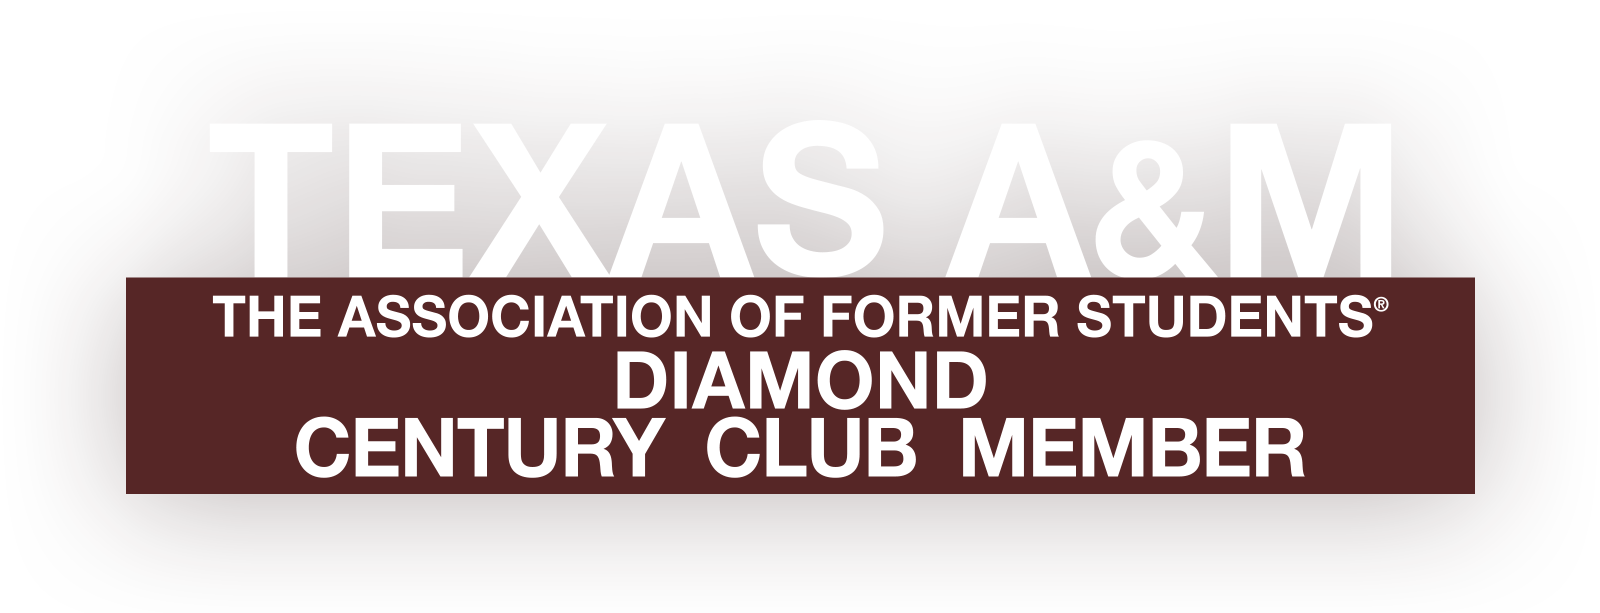 The Diamond Century Club Decal